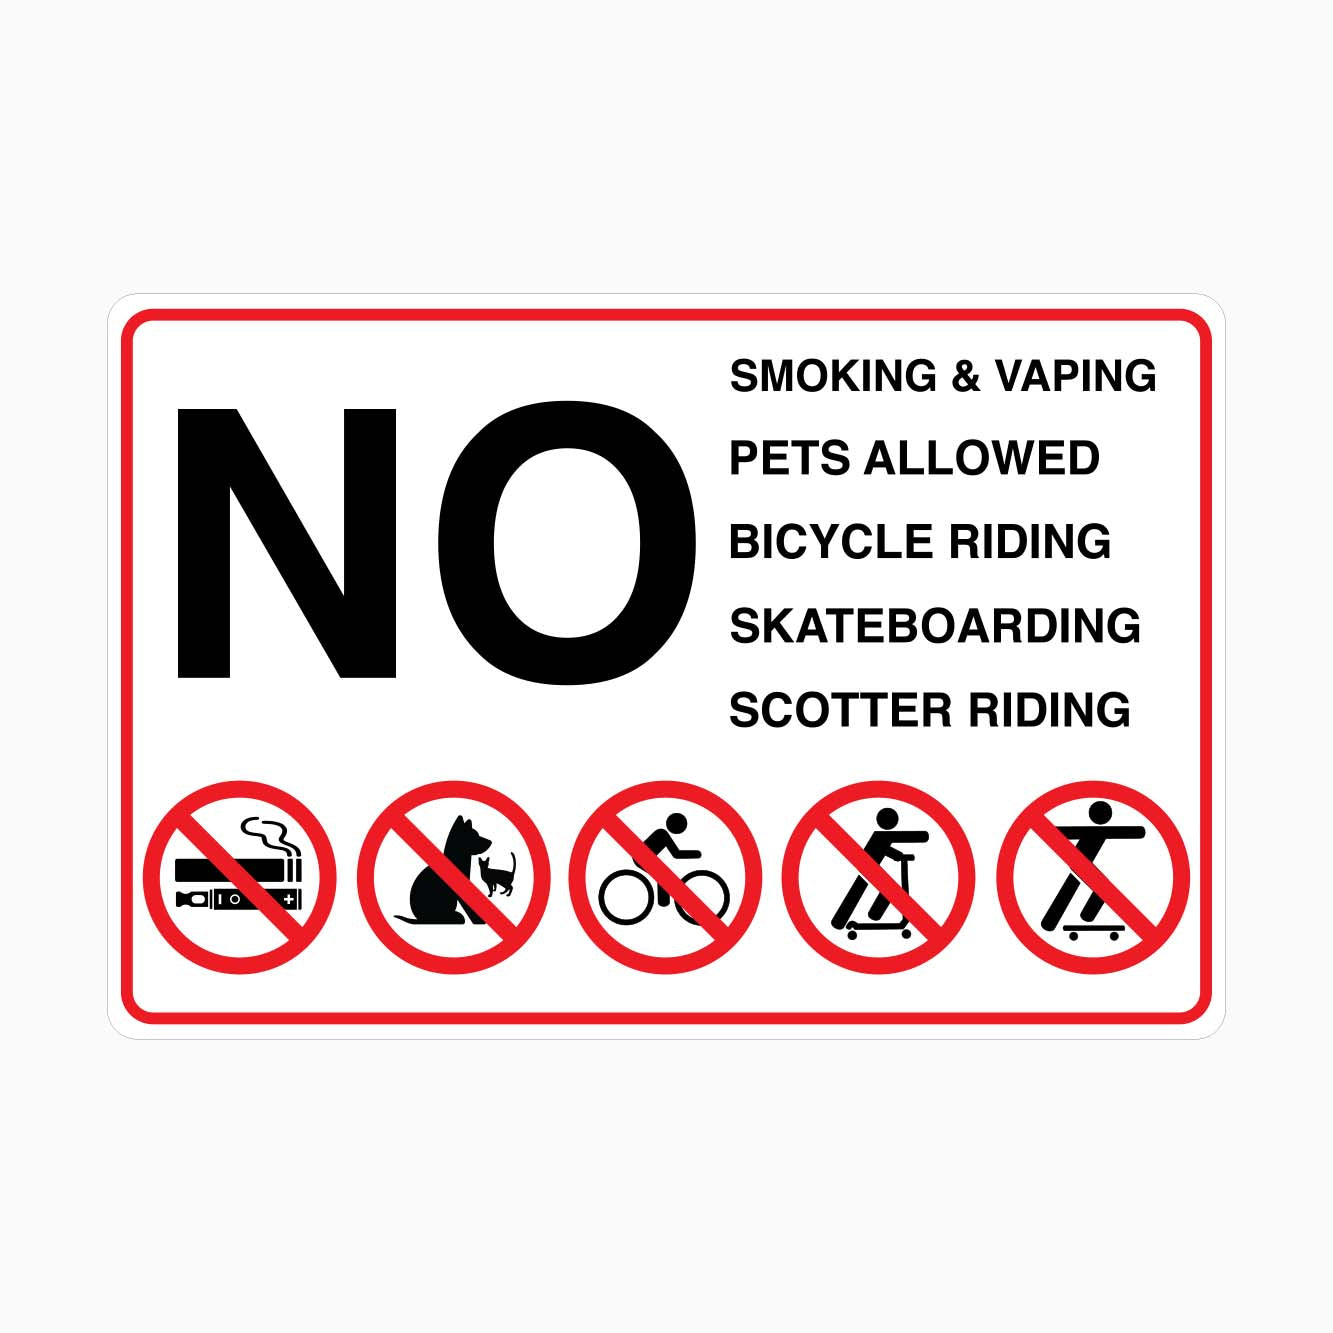 NO SMOKING and VAPING, NO PETS ALLOWED, NO BICYCLE RIDING, NO SKATEBOARDING, NO SCOTTER RIDING SIGN